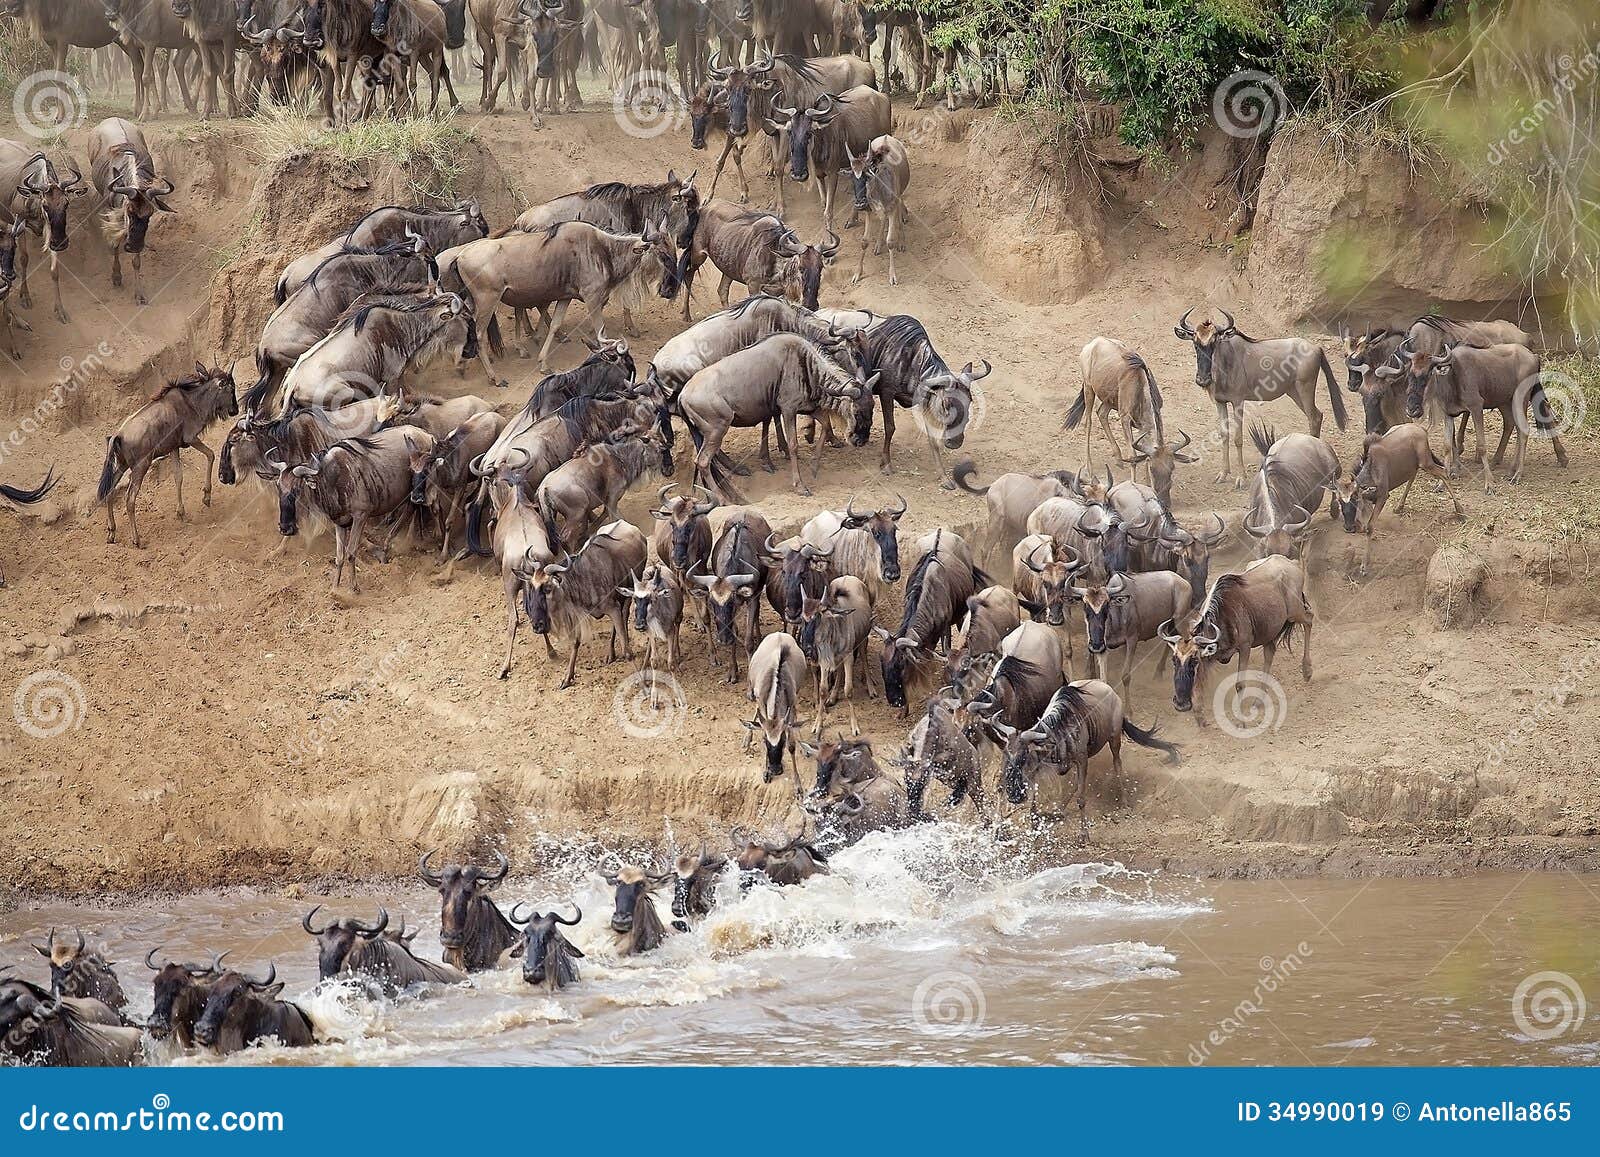 wildebeest (connochaetes taurinus) great migration